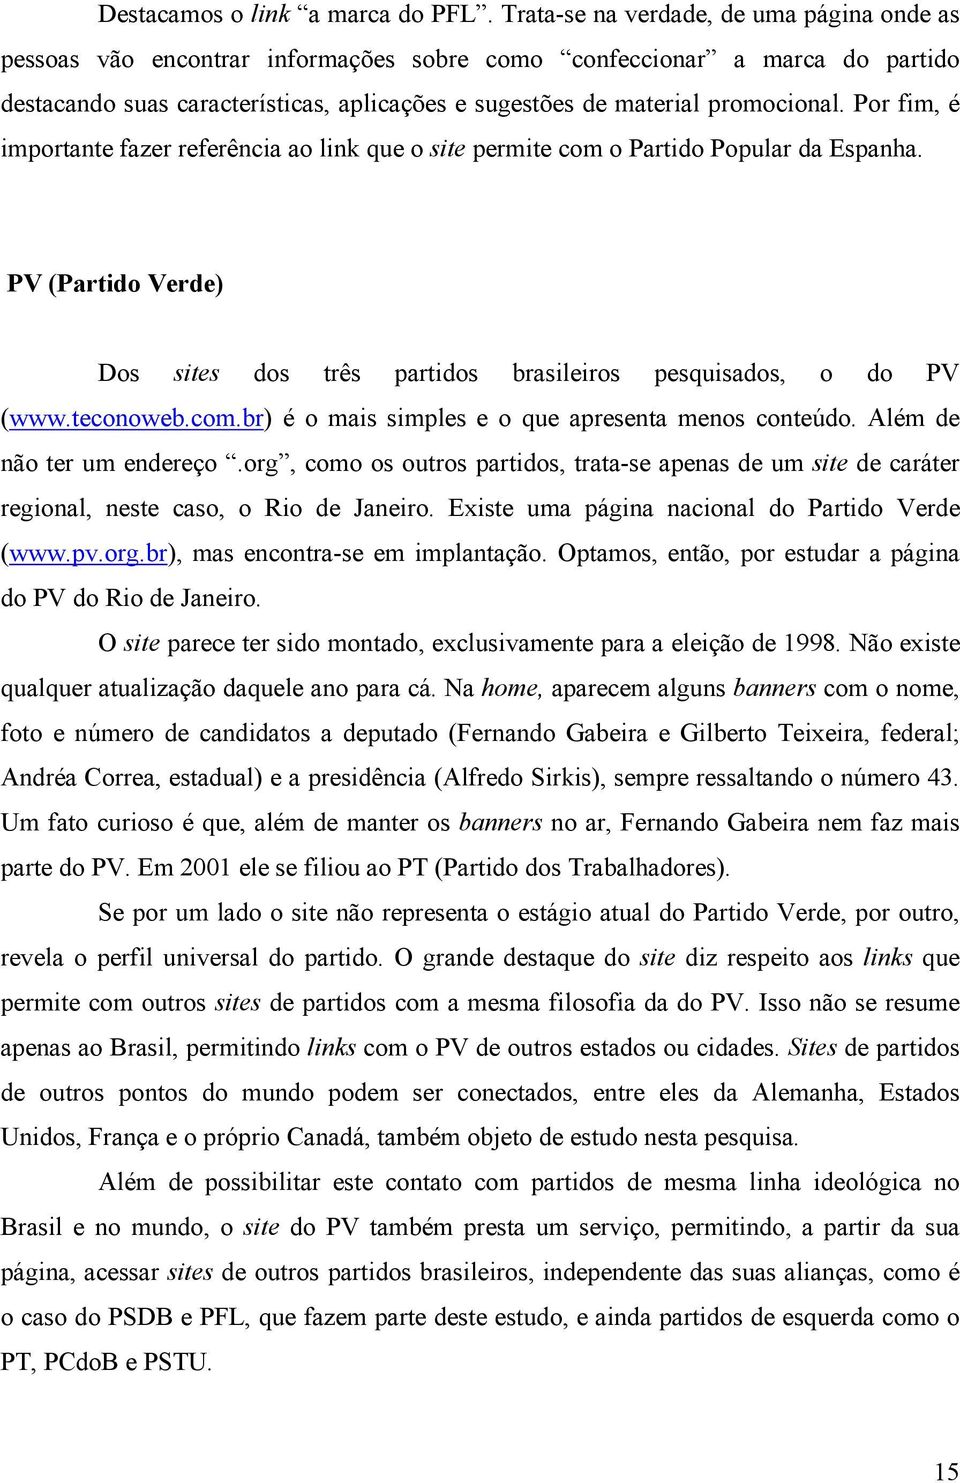 Por fim, é importante fazer referência ao link que o site permite com o Partido Popular da Espanha. PV (Partido Verde) Dos sites dos três partidos brasileiros pesquisados, o do PV (www.teconoweb.com.br) é o mais simples e o que apresenta menos conteúdo.